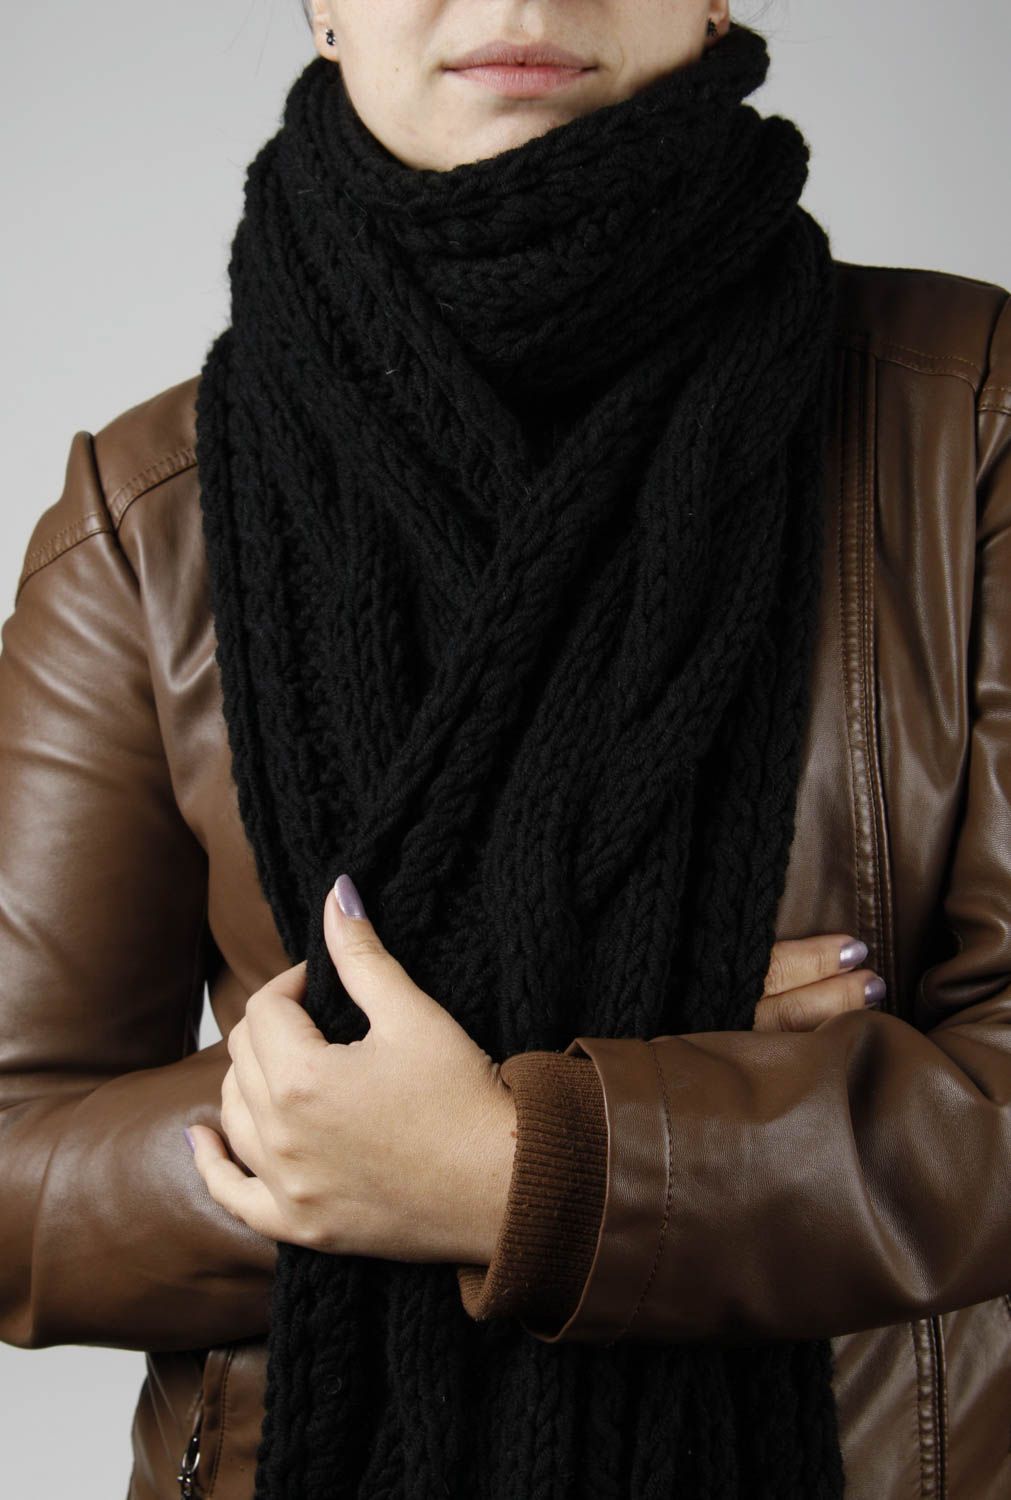 Шарф ручной работы шарф на шею черный теплый женский шарф из полушерсти фото 2